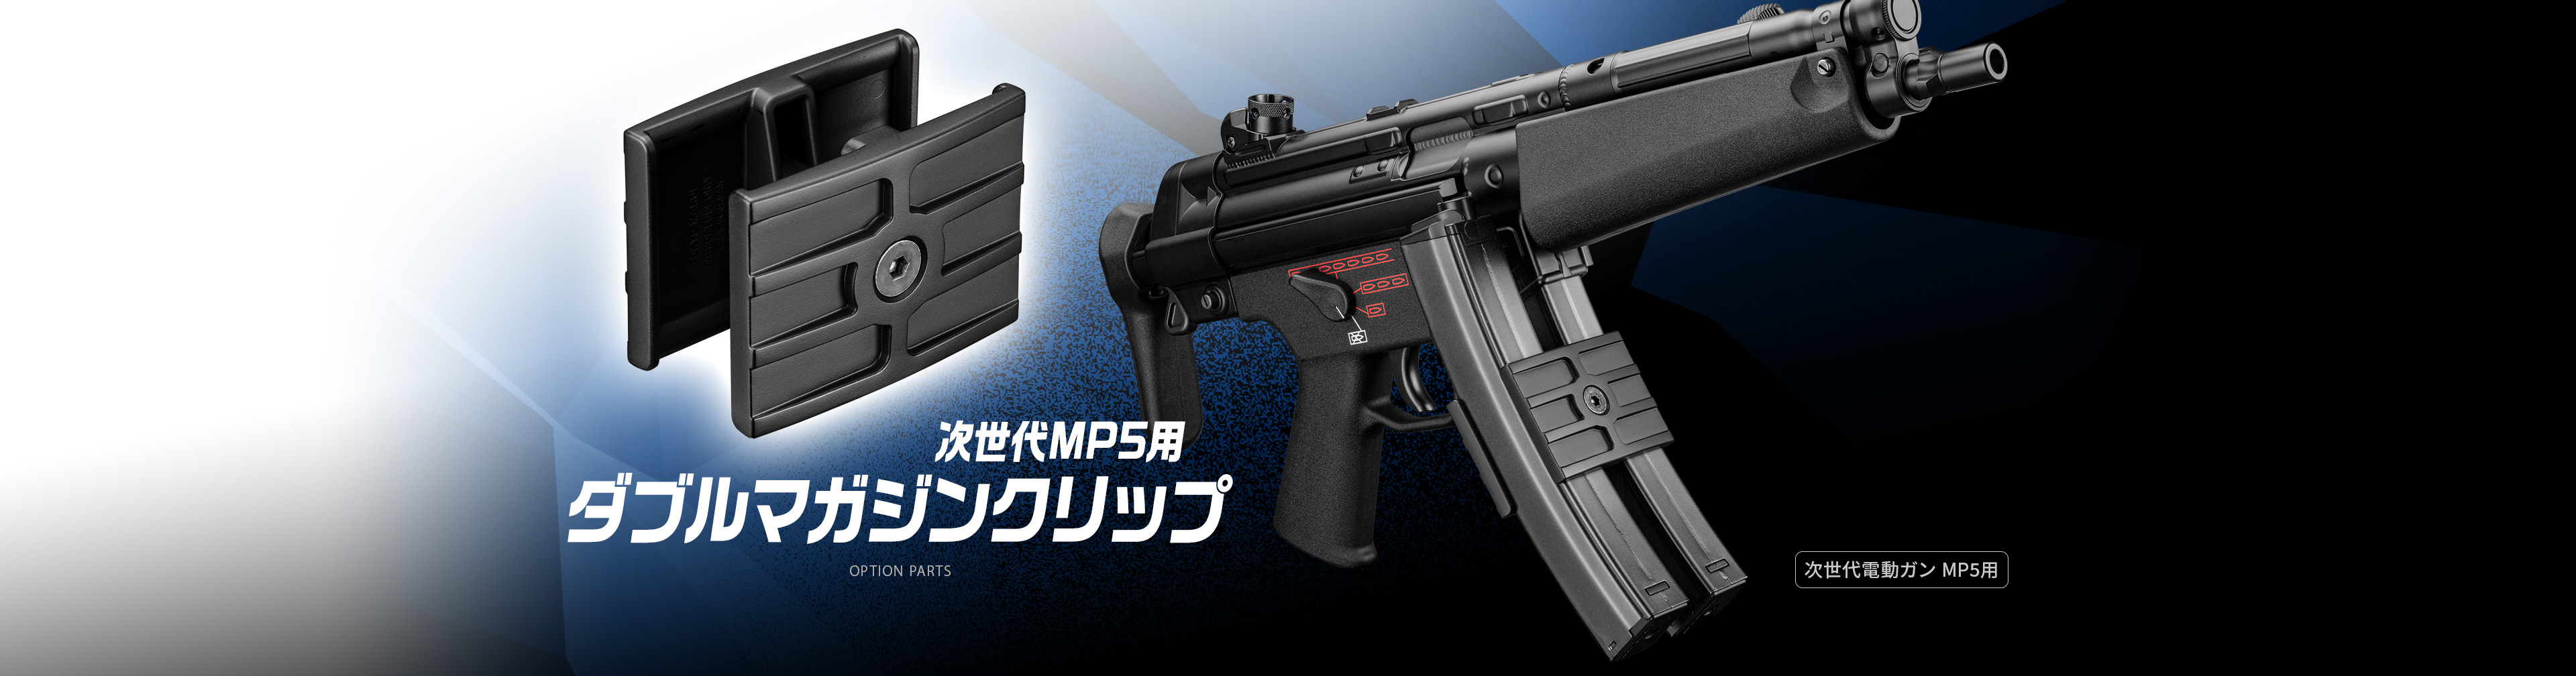 東京マルイ 次世代MP5用ダブルマガジンクリップ